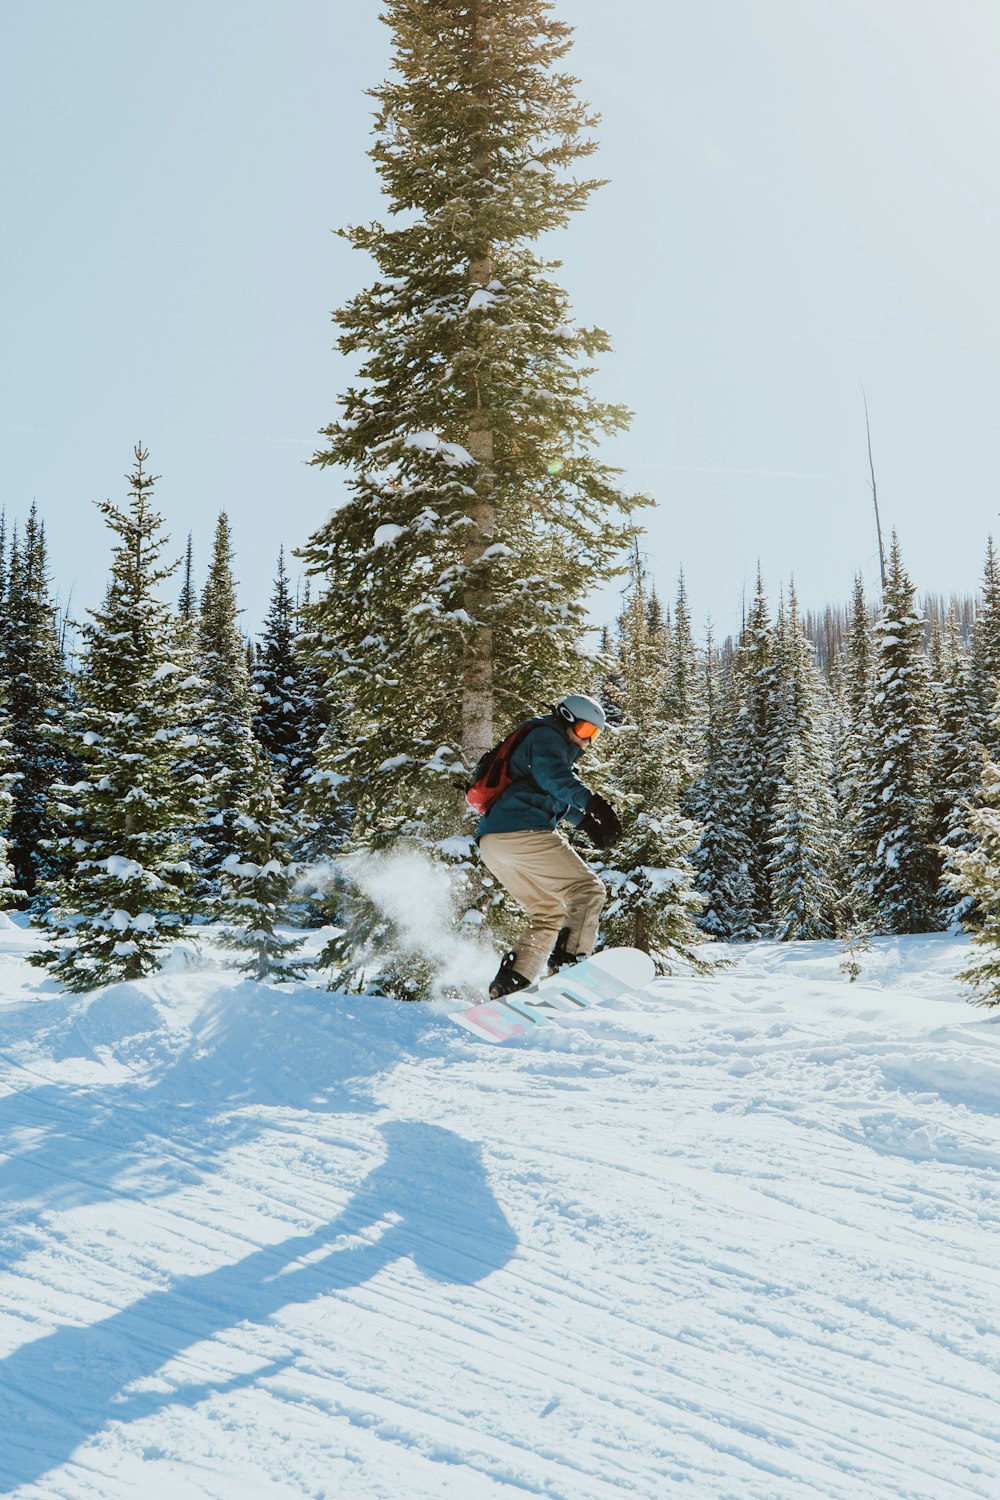 Mann in schwarzer Jacke und brauner Hose fährt tagsüber auf schneebedecktem Boden auf dem Snowboard